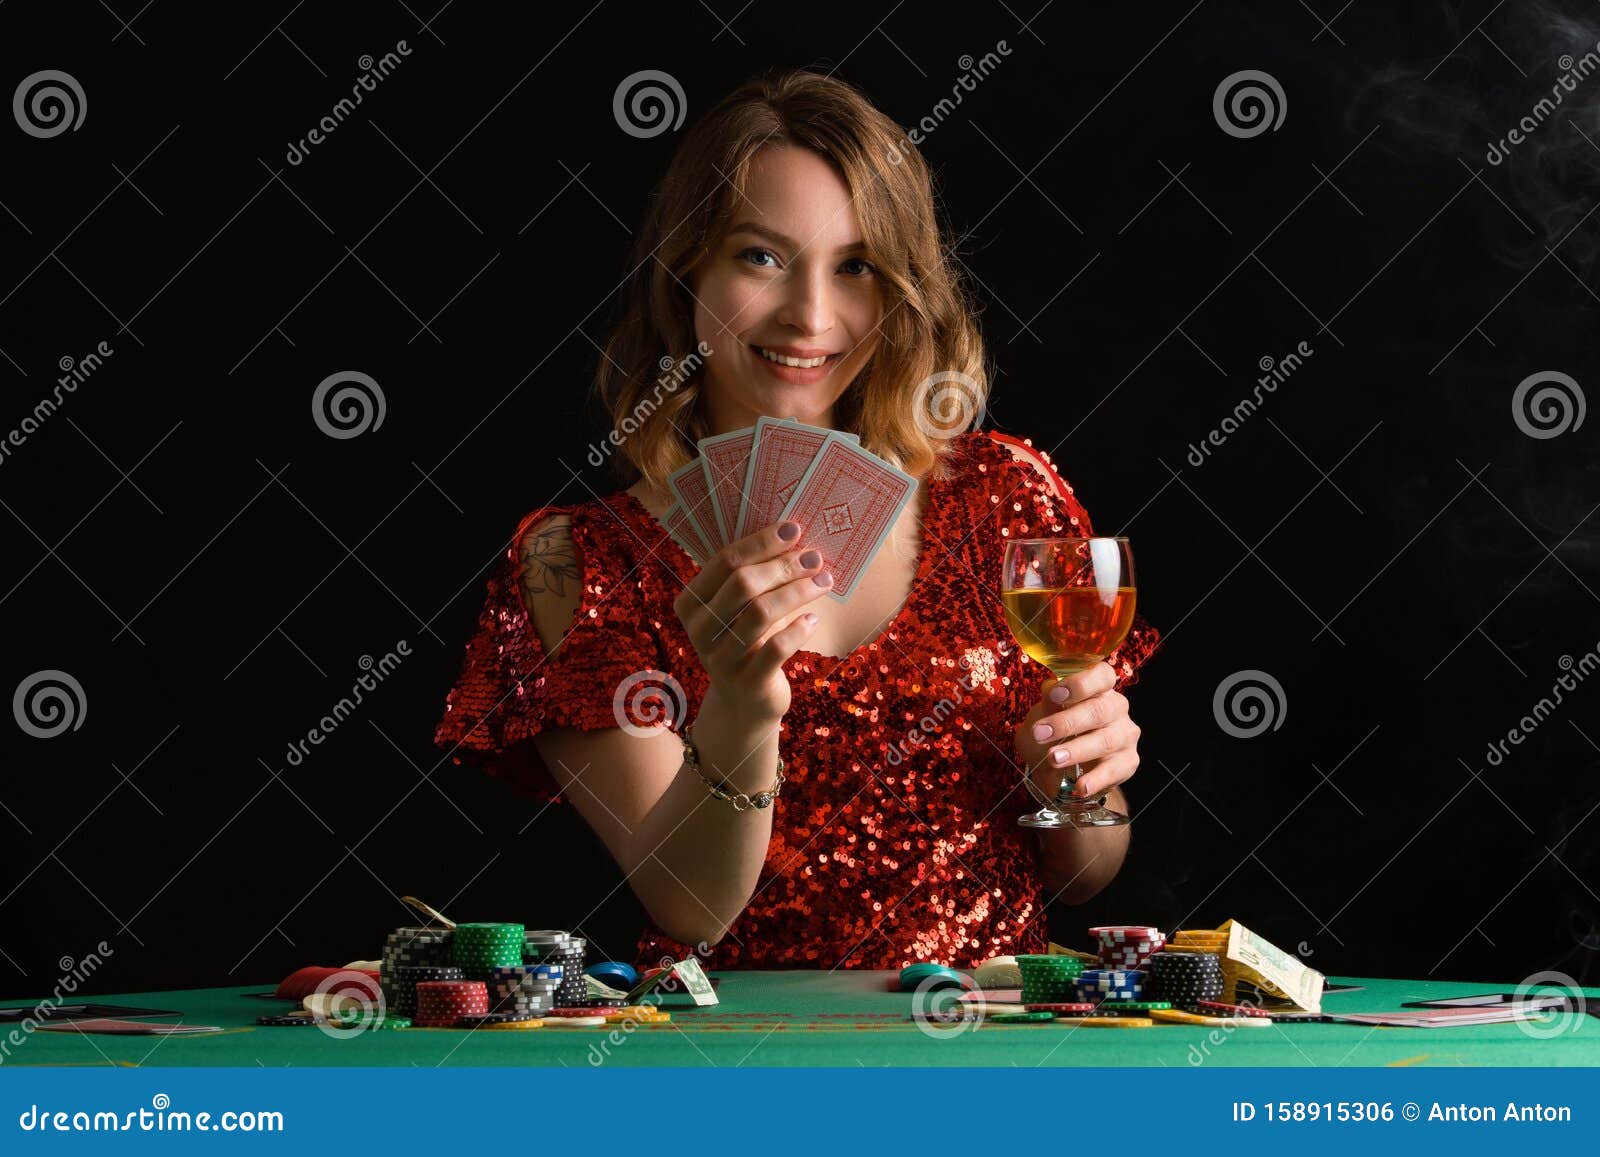 Spinit golden euro casino no deposit bonus code 2019